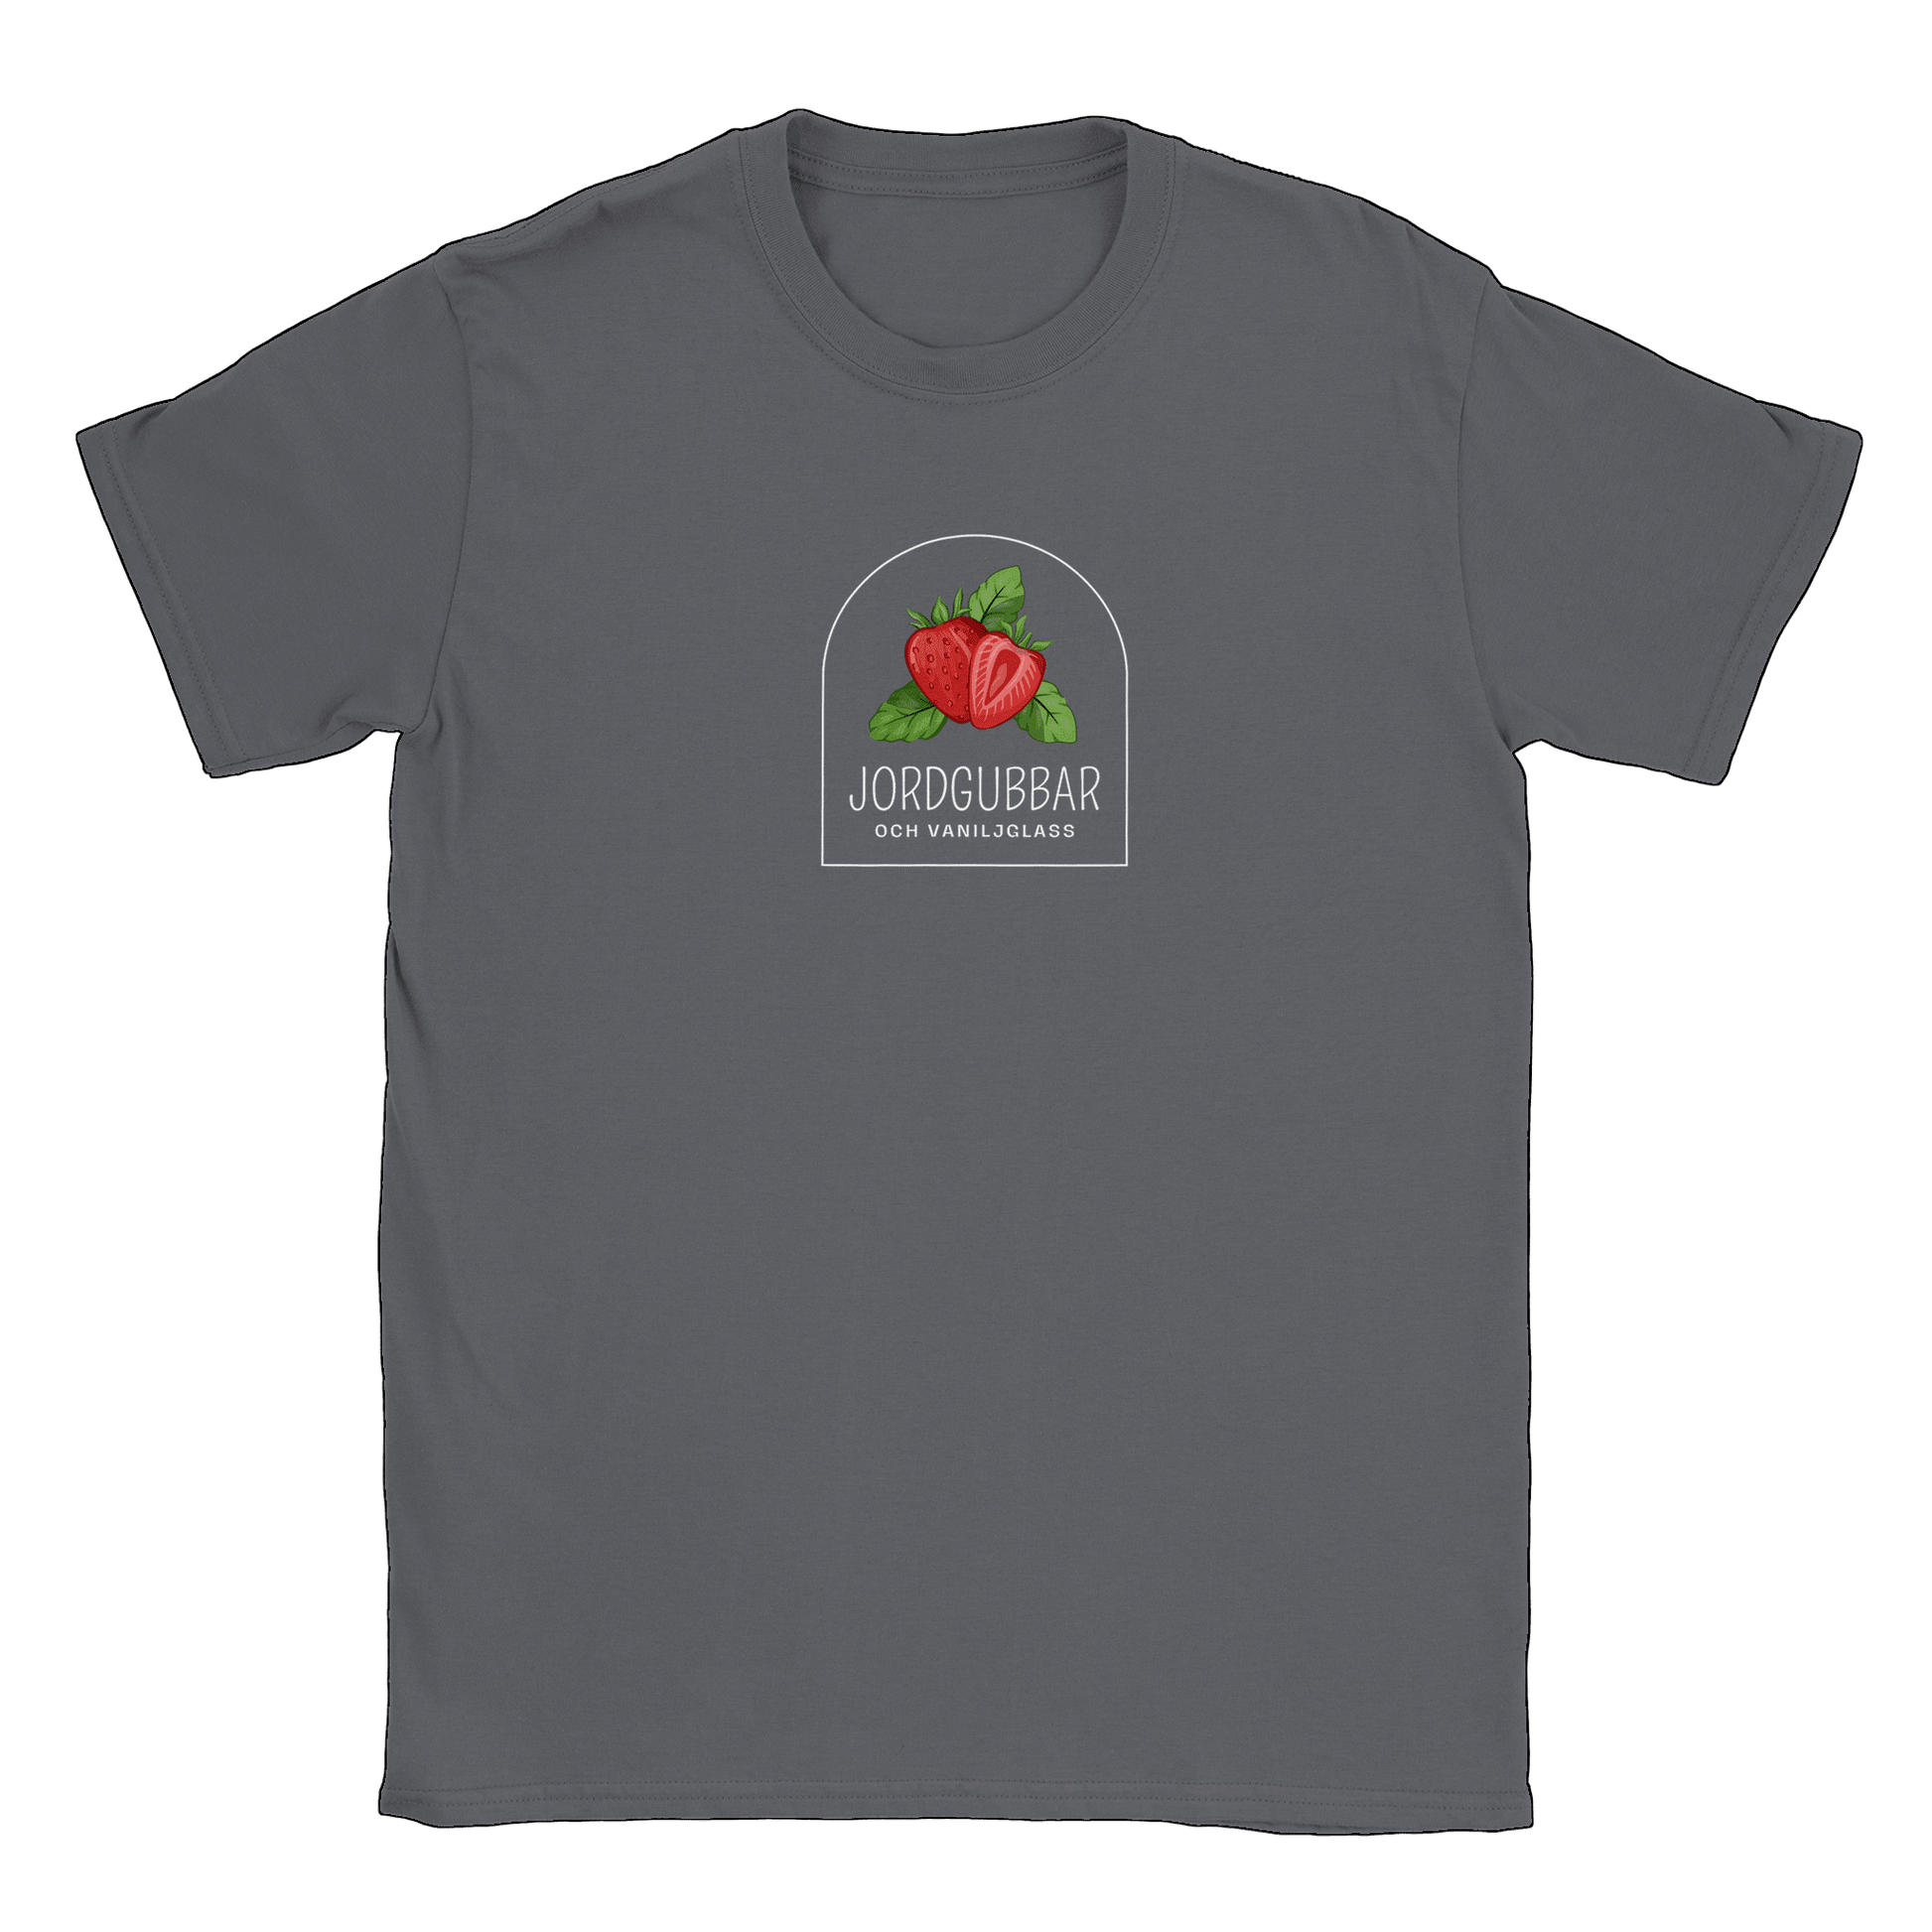 Jordgubbar och vaniljglass - T-shirt Charcoal